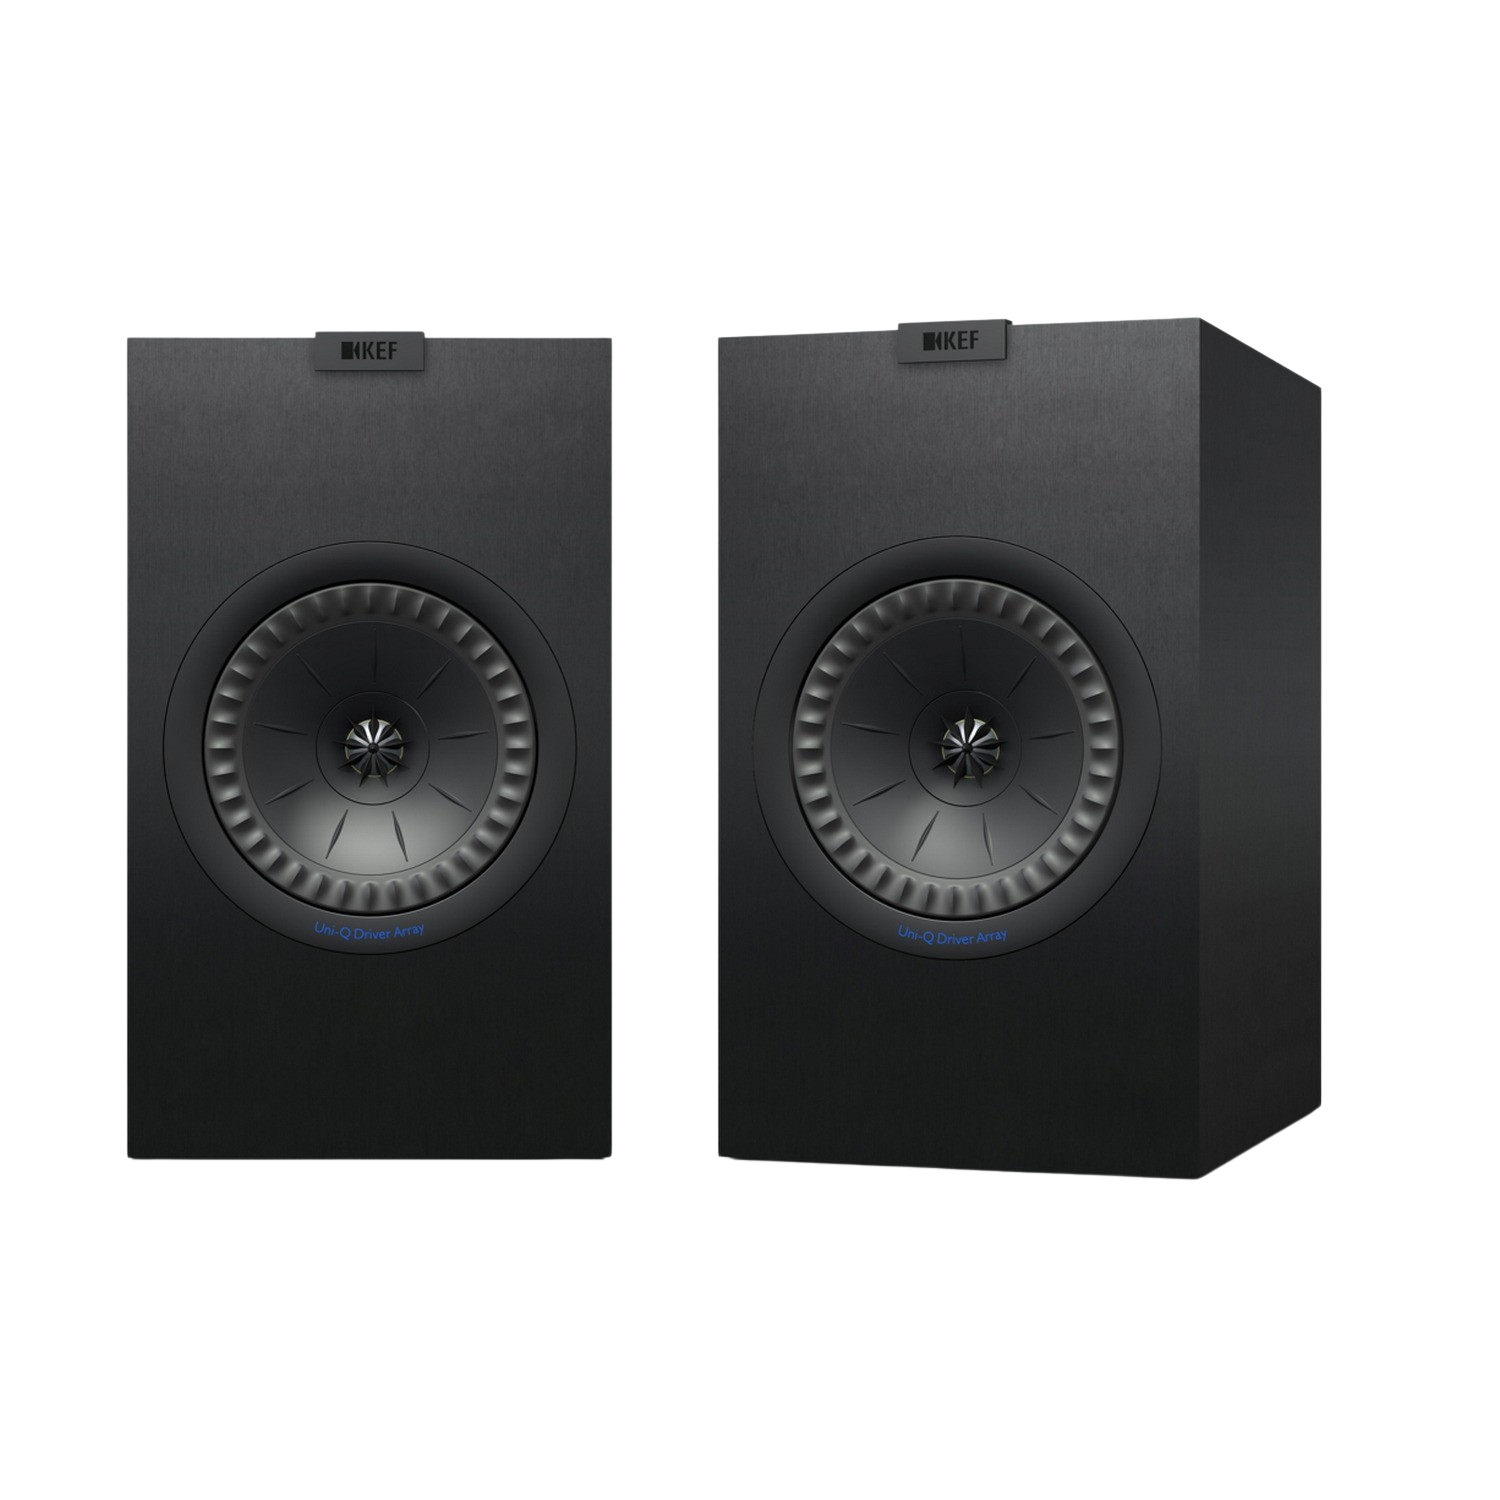 Kef Q350 De altavoces negros hifi cine en casa estantería cajas gama 2 pareja sistema audio 15 120w 87db 8 ohm 63hz 28khz